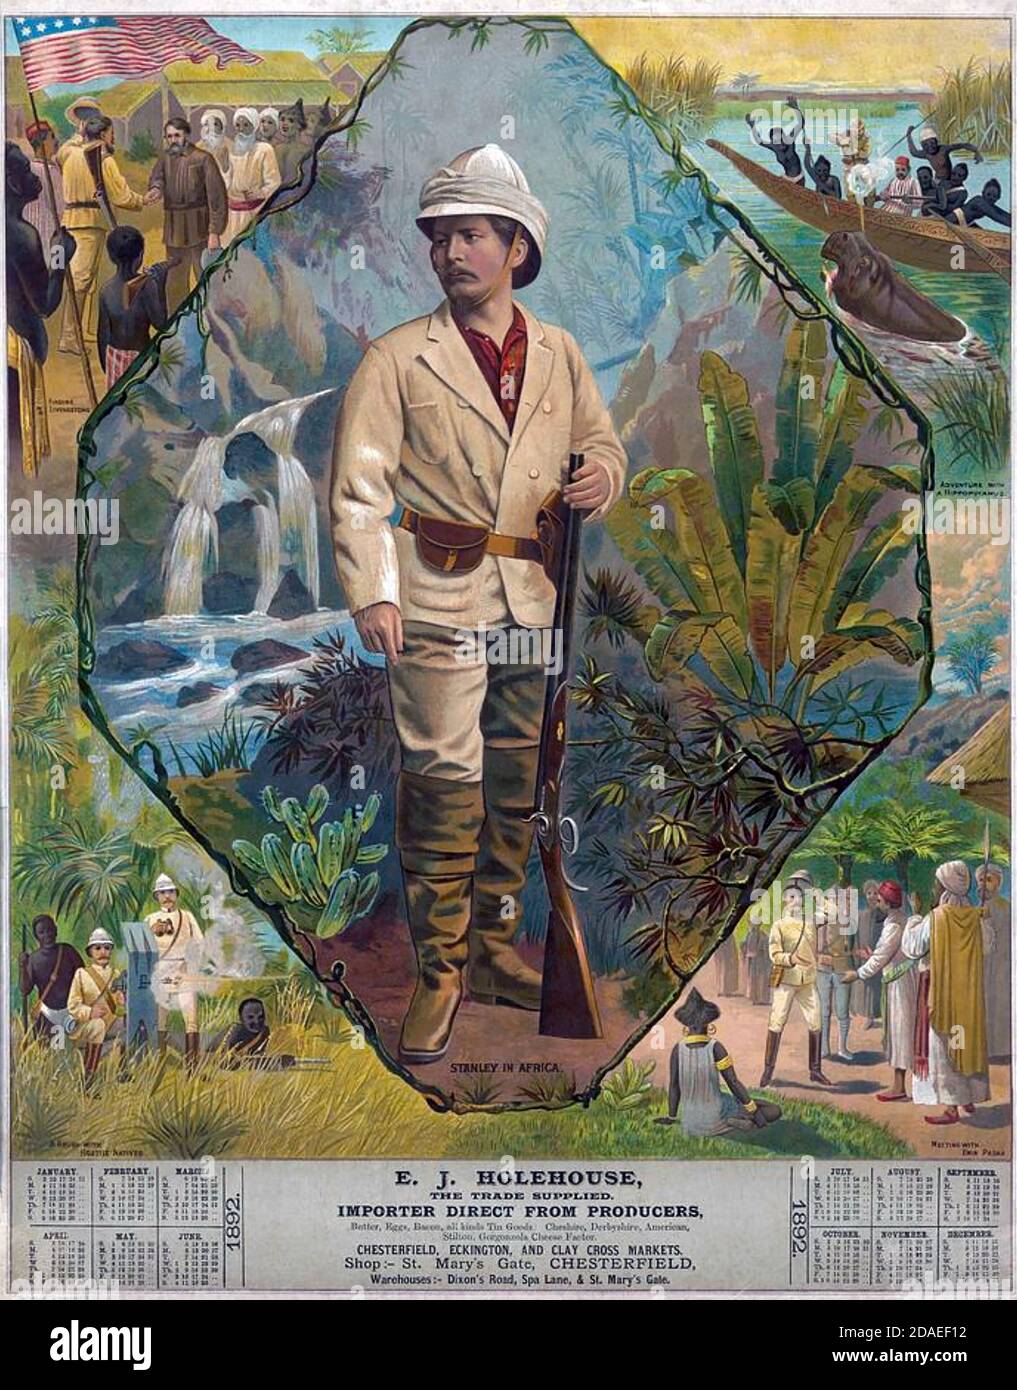 HENRY MORTON STANLEY (1841-1904) soldado galés-americano, explorador, periodista en un retrato de 1872 que se utiliza en el calendario promocional de un comerciante inglés para 1892. Las imágenes de cada esquina muestran lo más destacado de la vida de Morton. Foto de stock